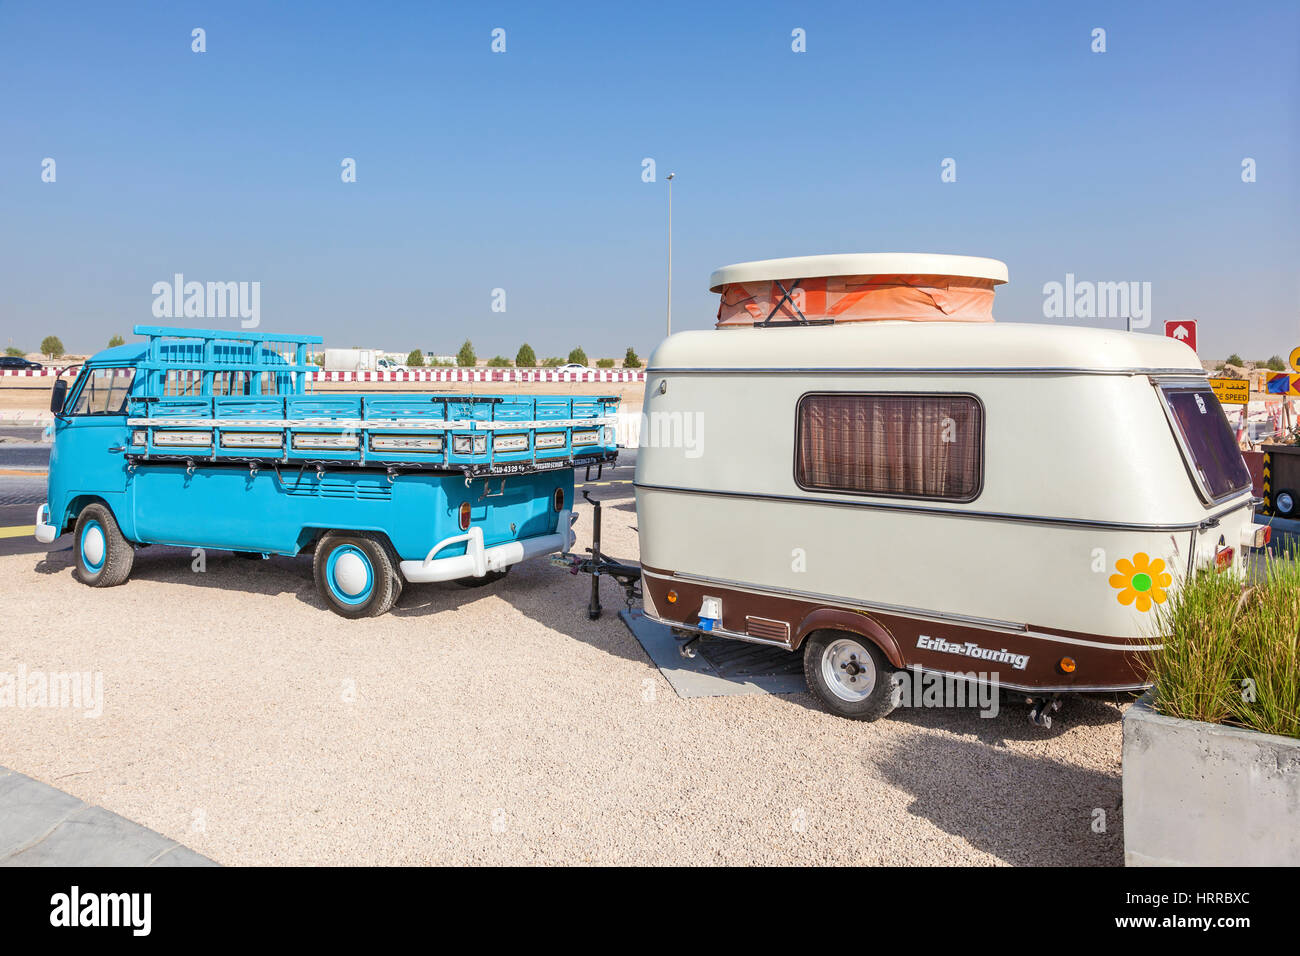 Dubaï, Émirats arabes unis - 27 nov., 2016 : Volkswagen T1 Historique avec une vieille caravane Eriba-Touring à la dernière sortie du parc de camions de nourriture à Dubaï, Émirats Arabes Unis Banque D'Images